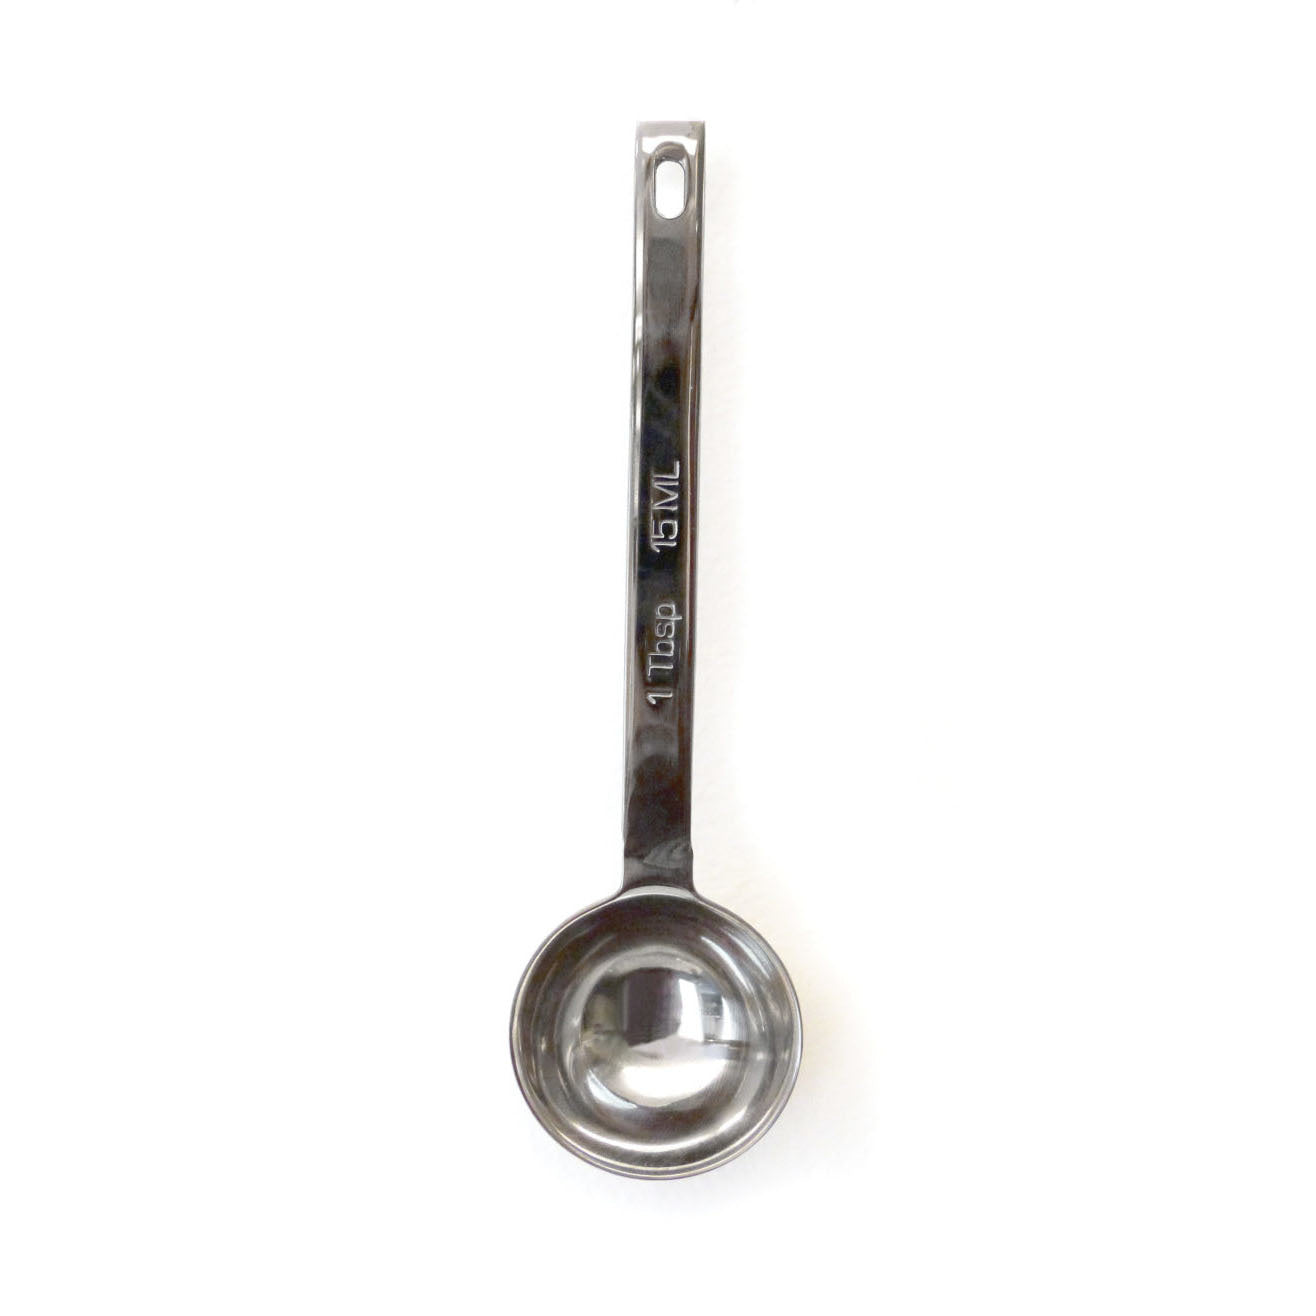 1 Tbsp Measuring Spoon